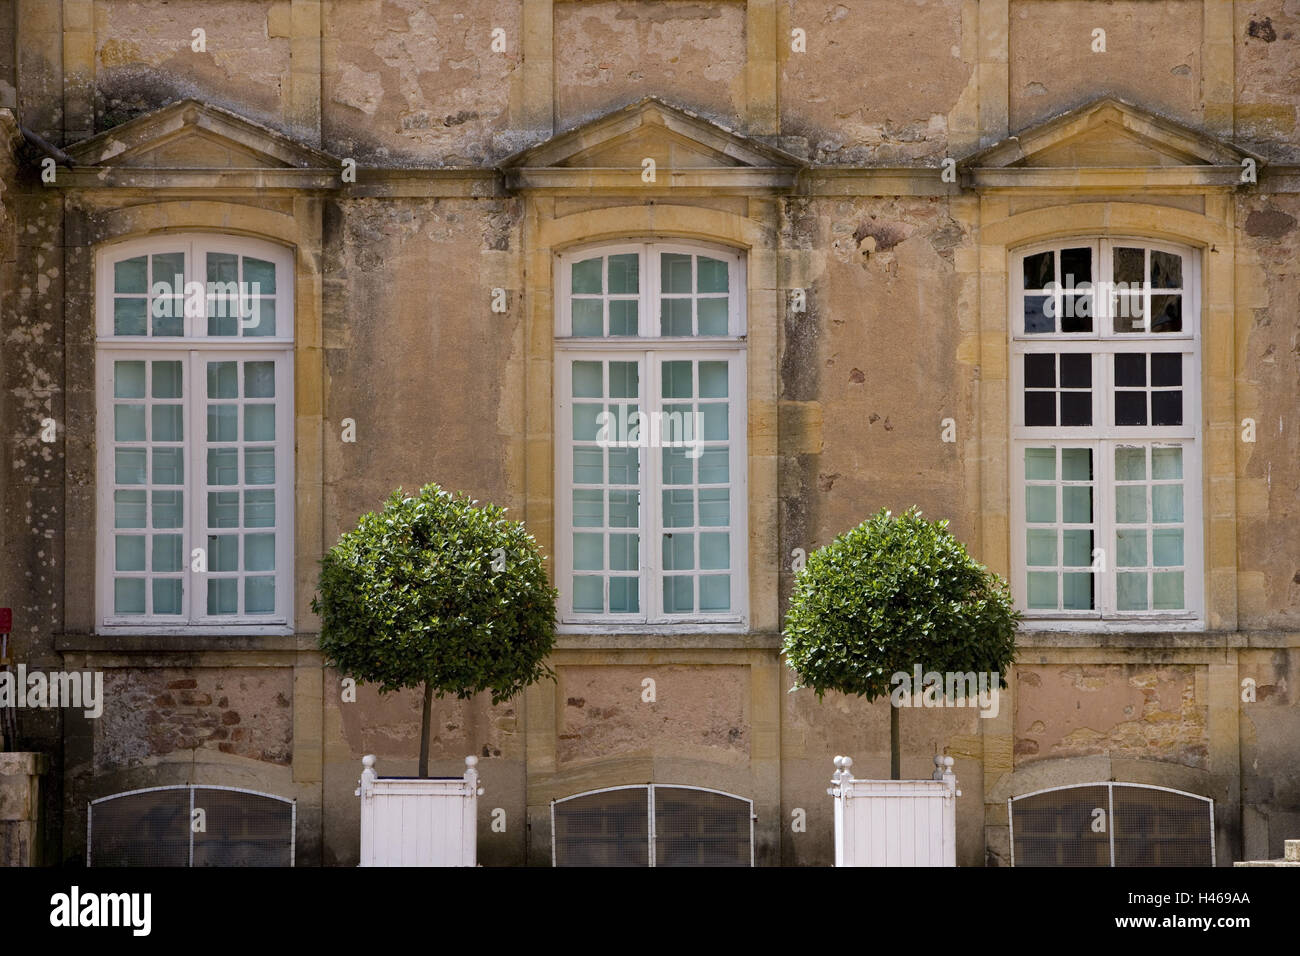 France, Bourgogne, Saone-et-Loire, Charolles, La Clayette, Corbigny, Chateau de Dree, facade, detail, boxes, Stock Photo